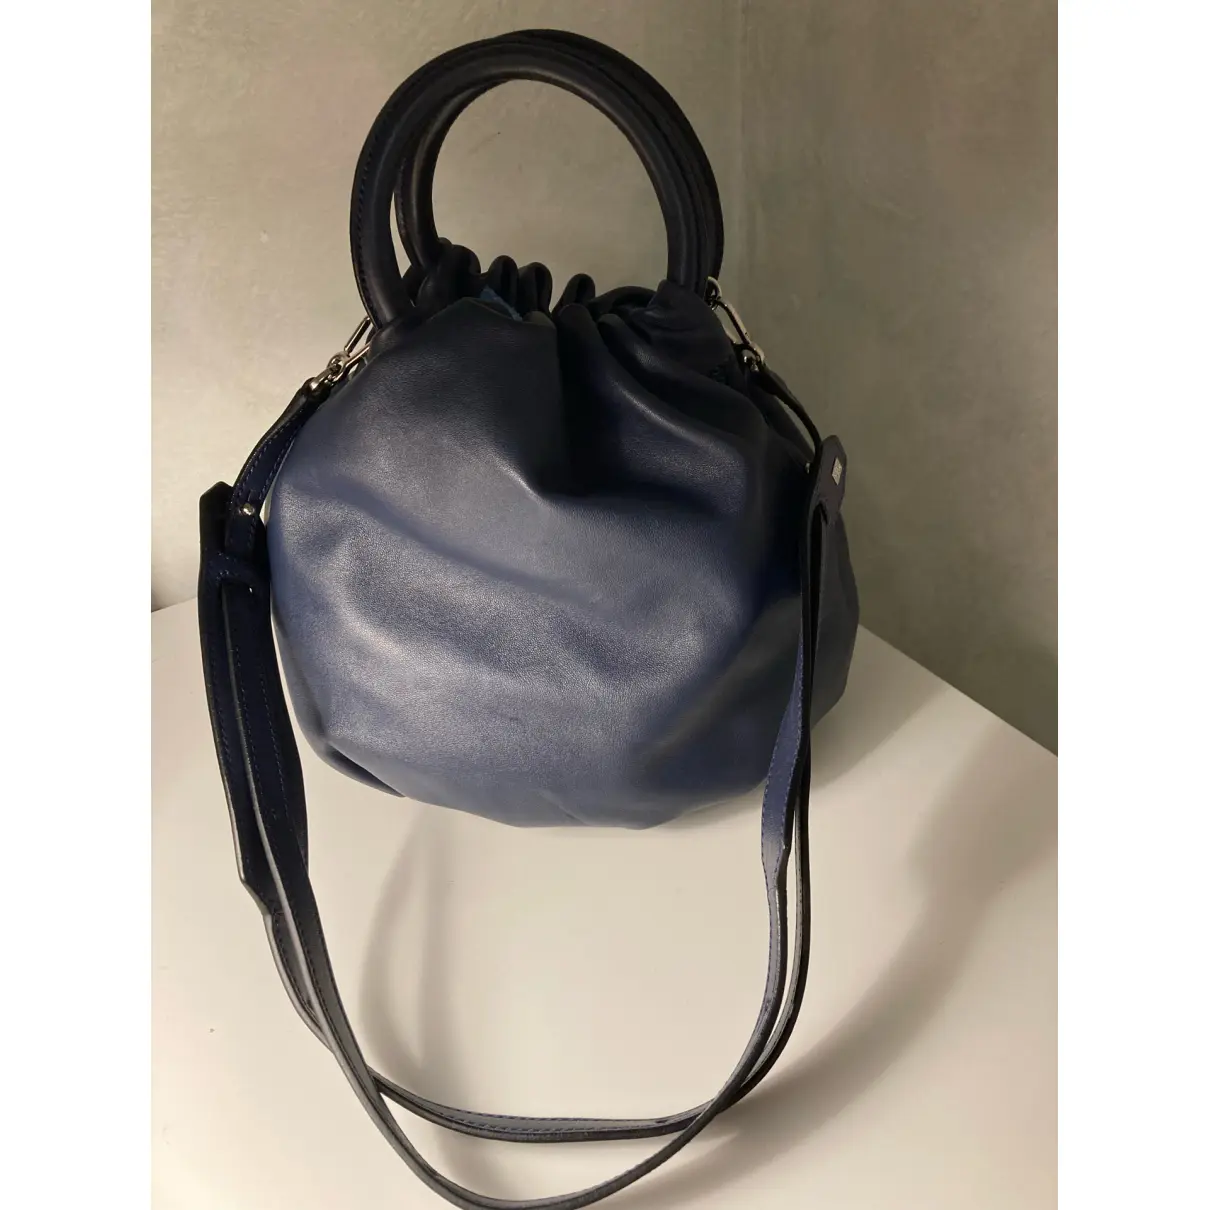 Buy Loewe Bounce Bag leather handbag online